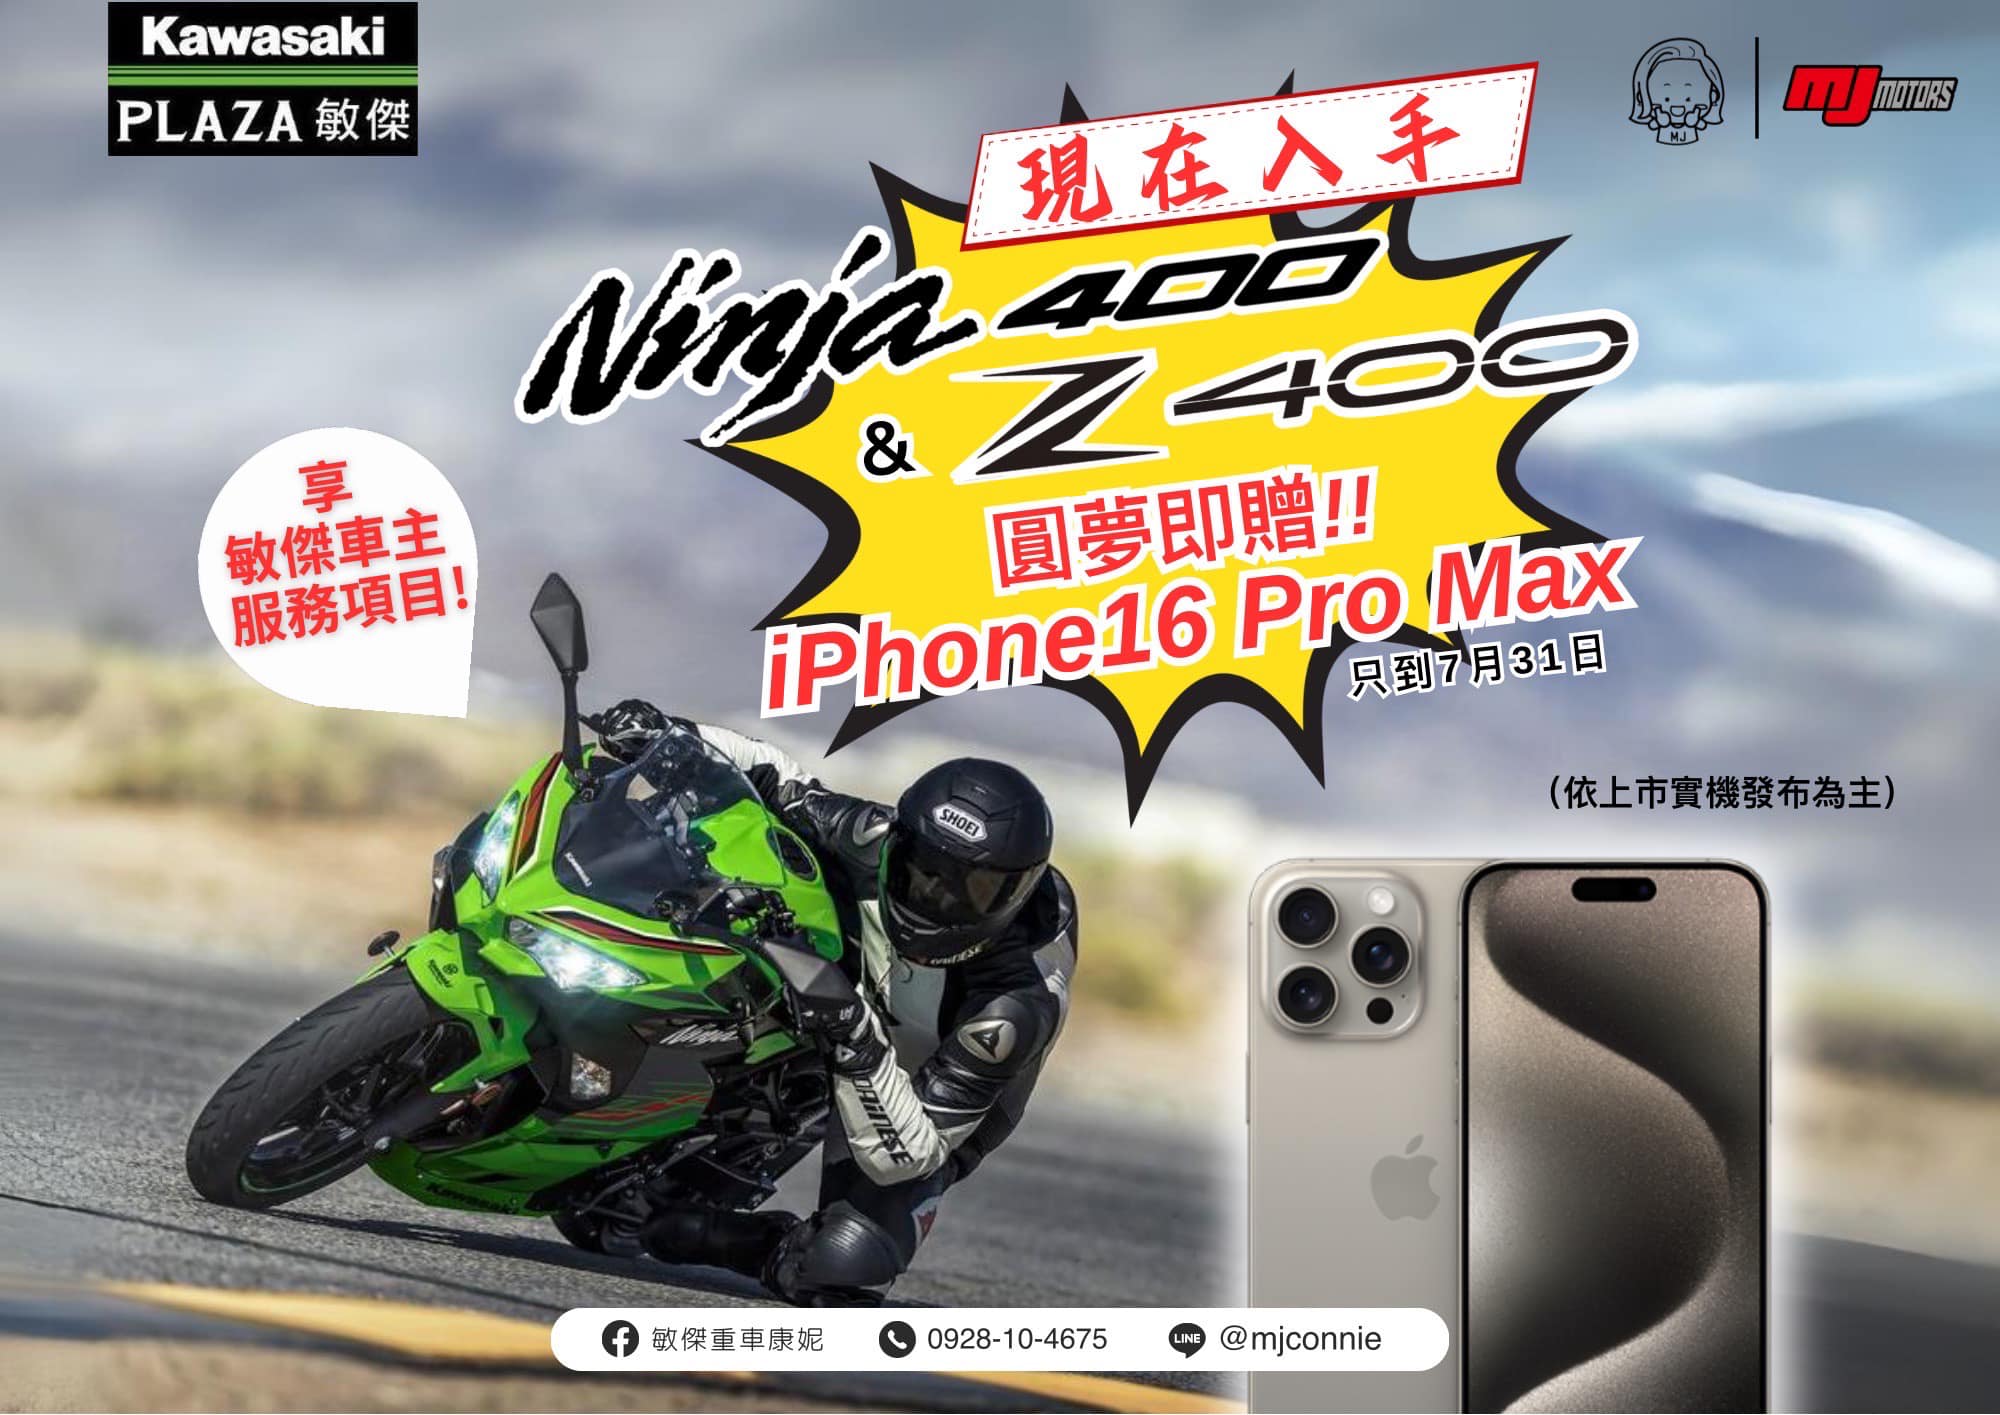 【敏傑車業資深銷售專員 康妮 Connie】KAWASAKI NINJA400 - 「Webike-摩托車市」 『敏傑康妮』Kawasaki 忍者400/ Z400 + iPhone16 pro max 最棒的禮物一次擁有